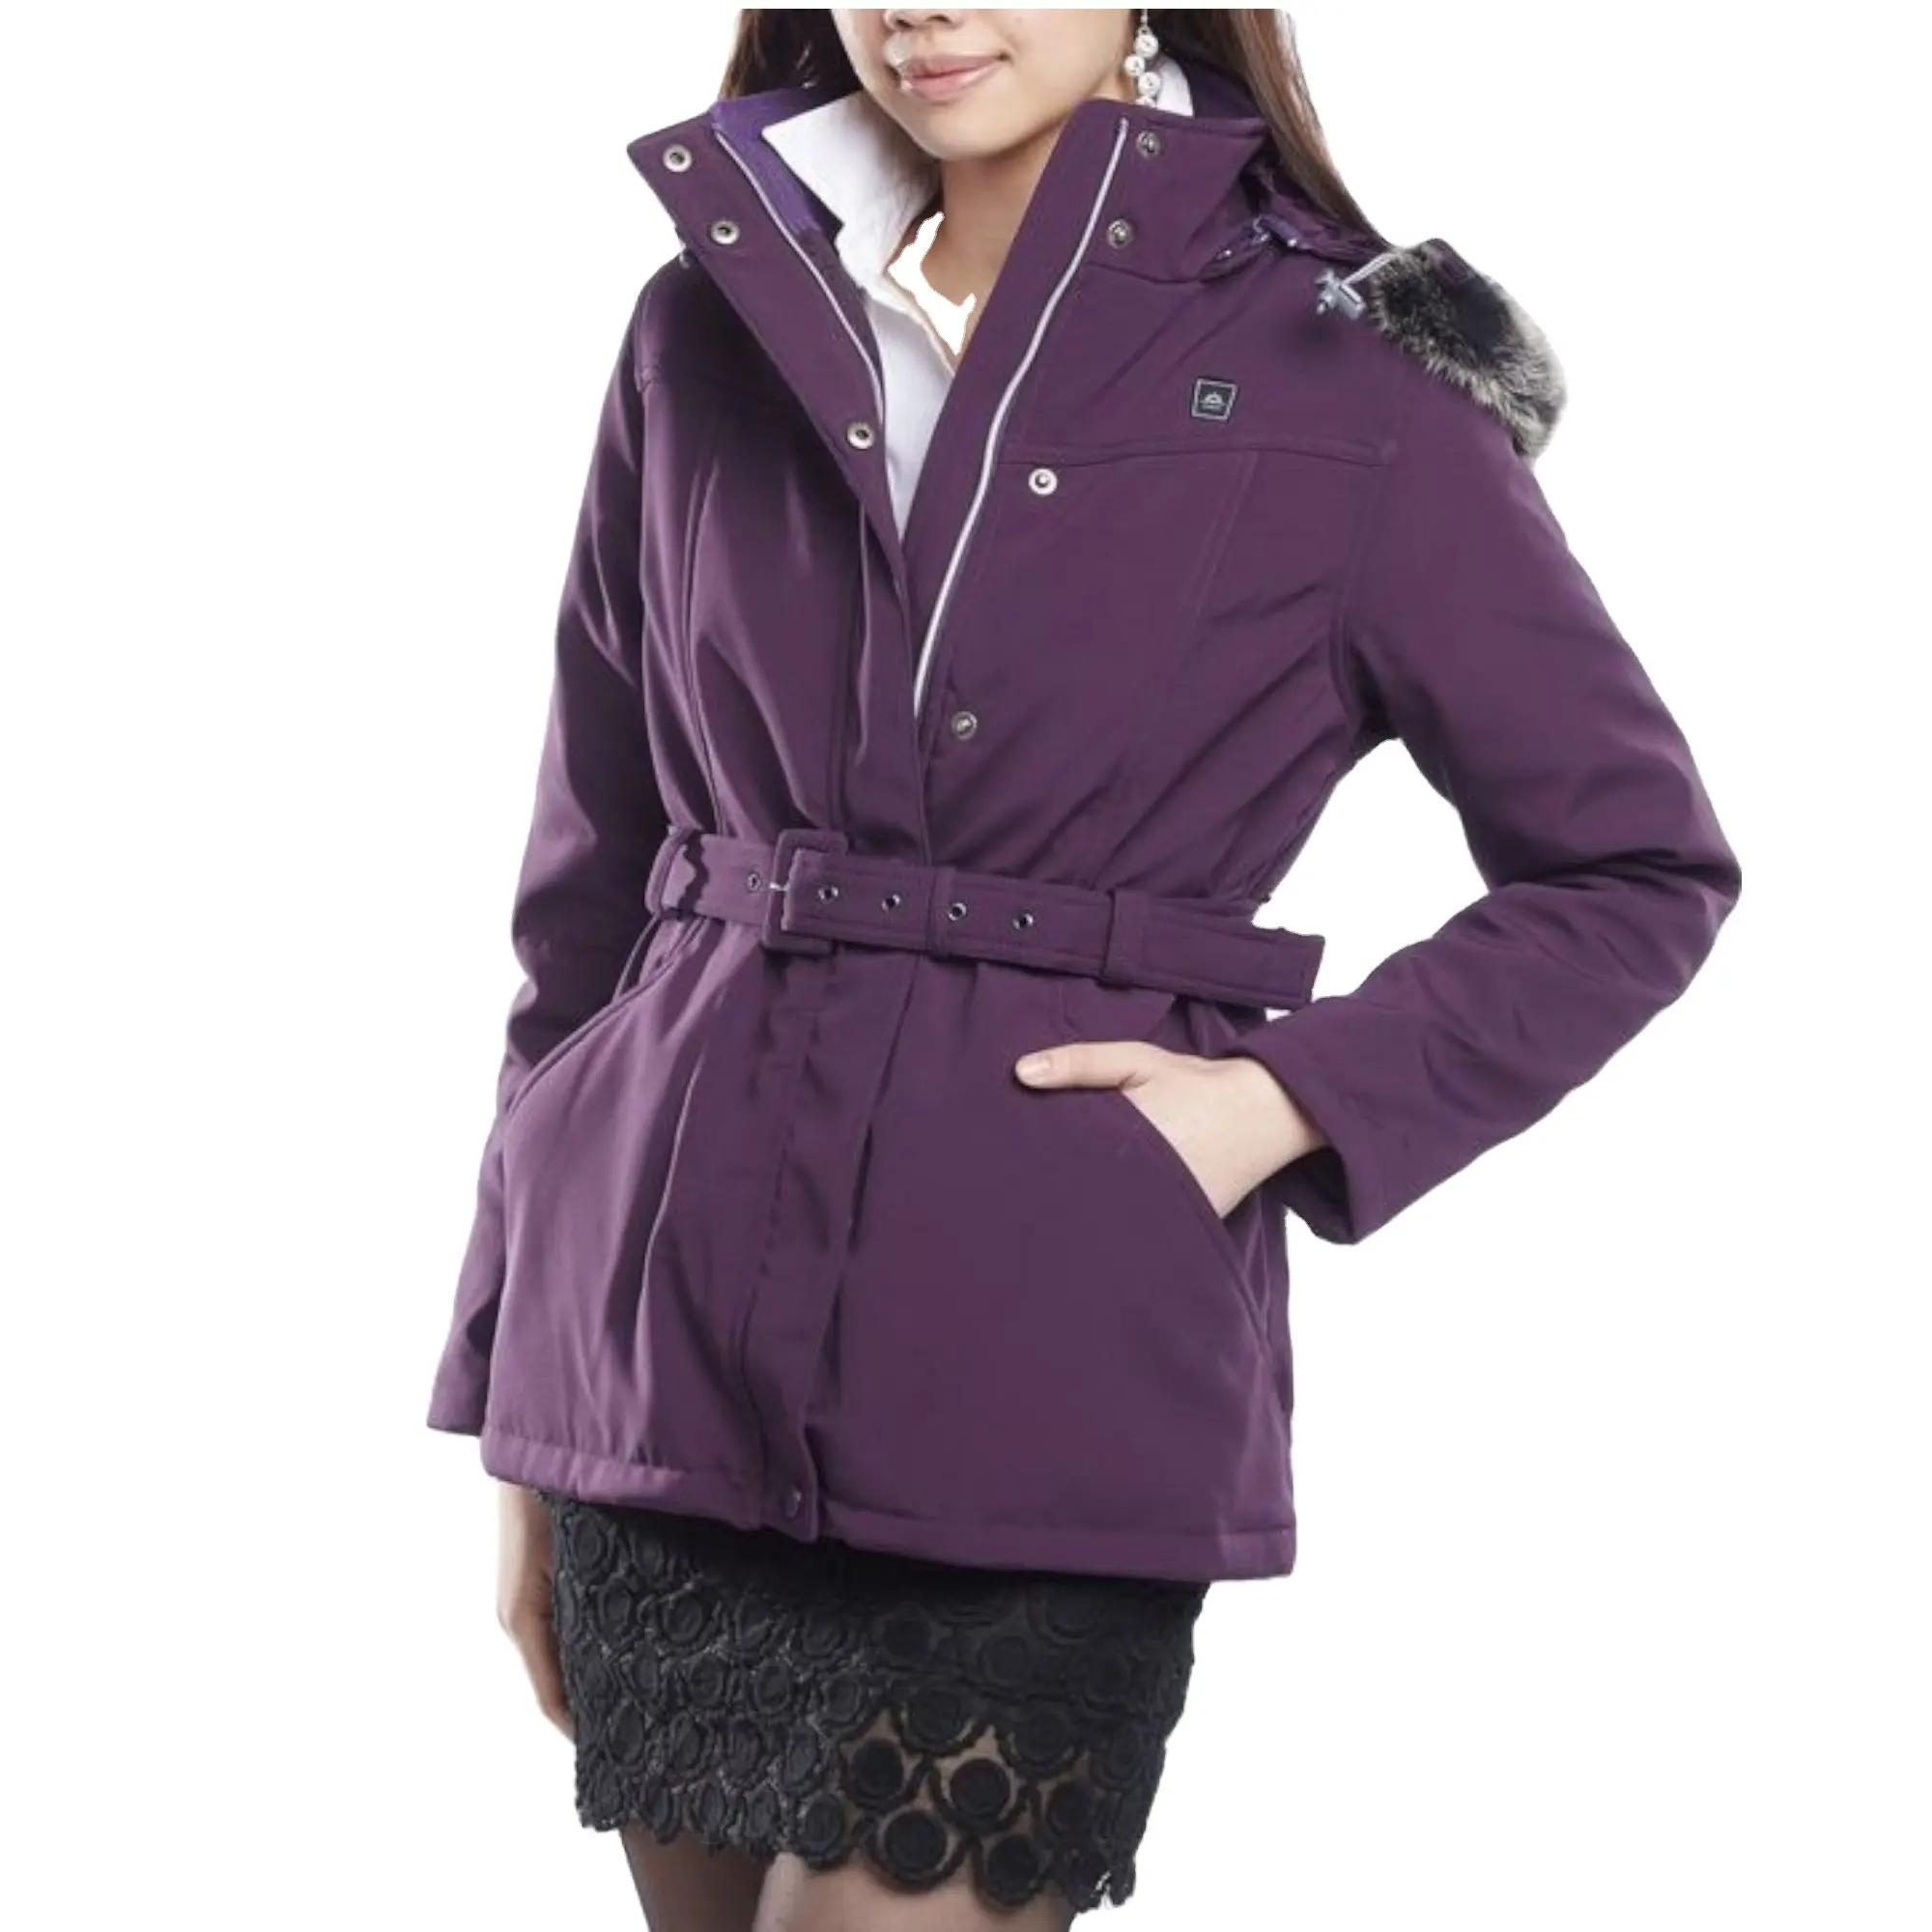 Wholesale Winter Fashion Women Hooded Fur Heated Jacket For Women